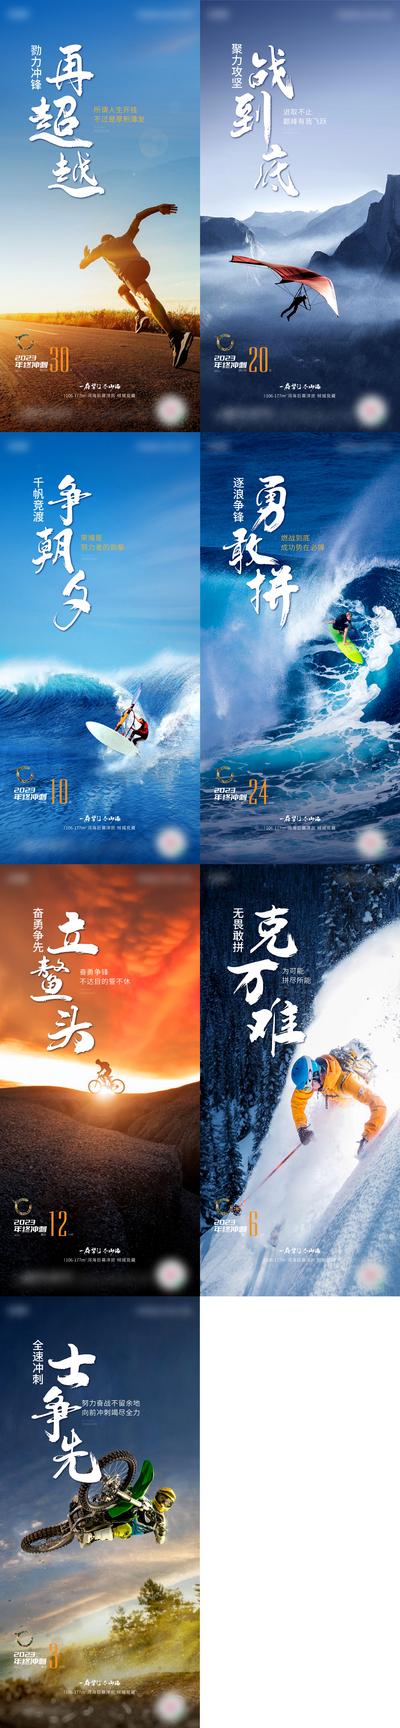 南门网 广告 海报 倒计时 冲刺 跑步 飞行 帆船 冲浪 骑行 滑雪 正能量 运动